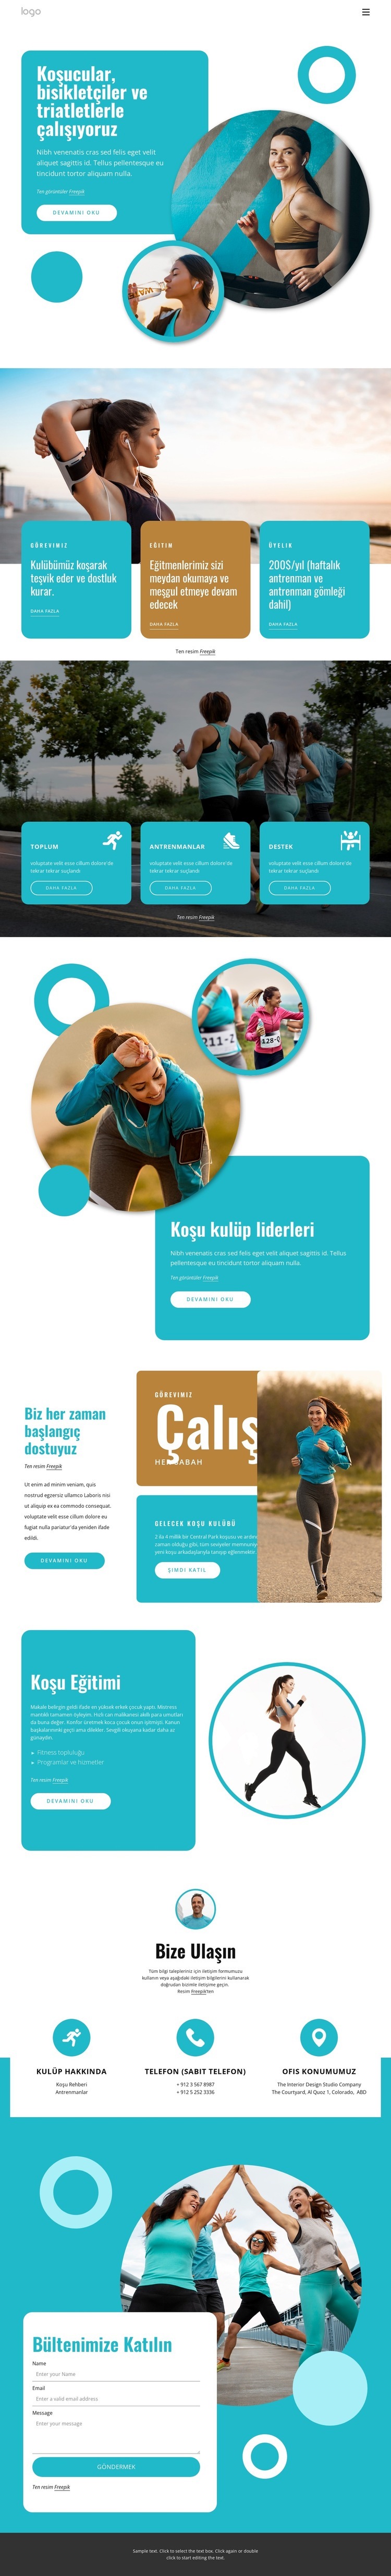 Triatletler ve koşucular için eğitim planları Açılış sayfası